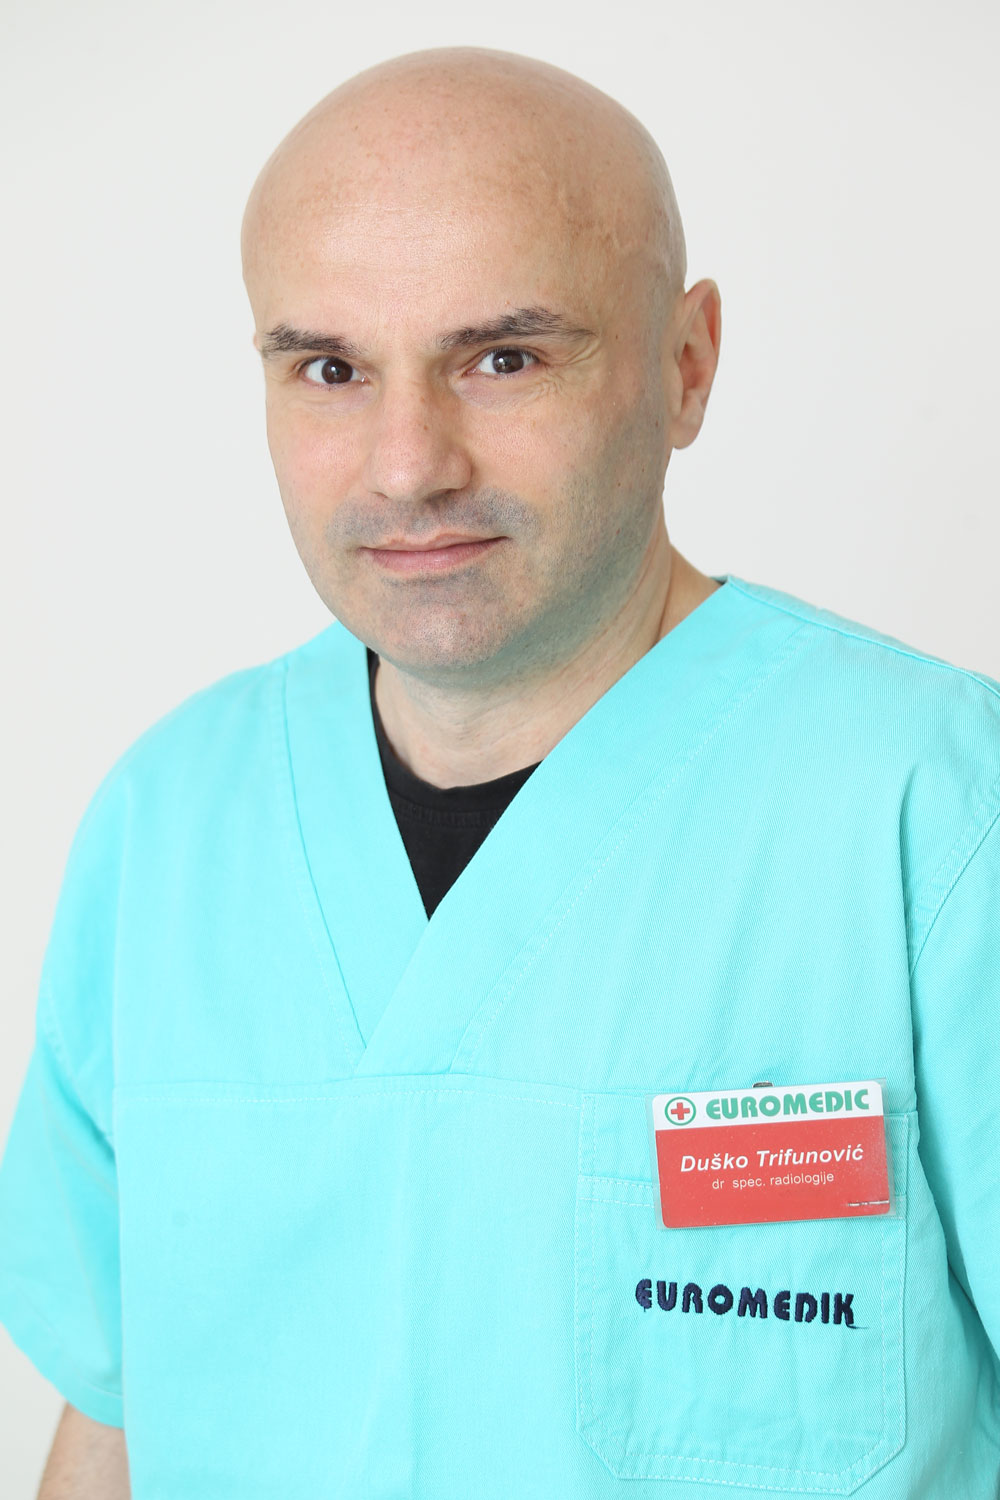 Dr Duško Trifunović